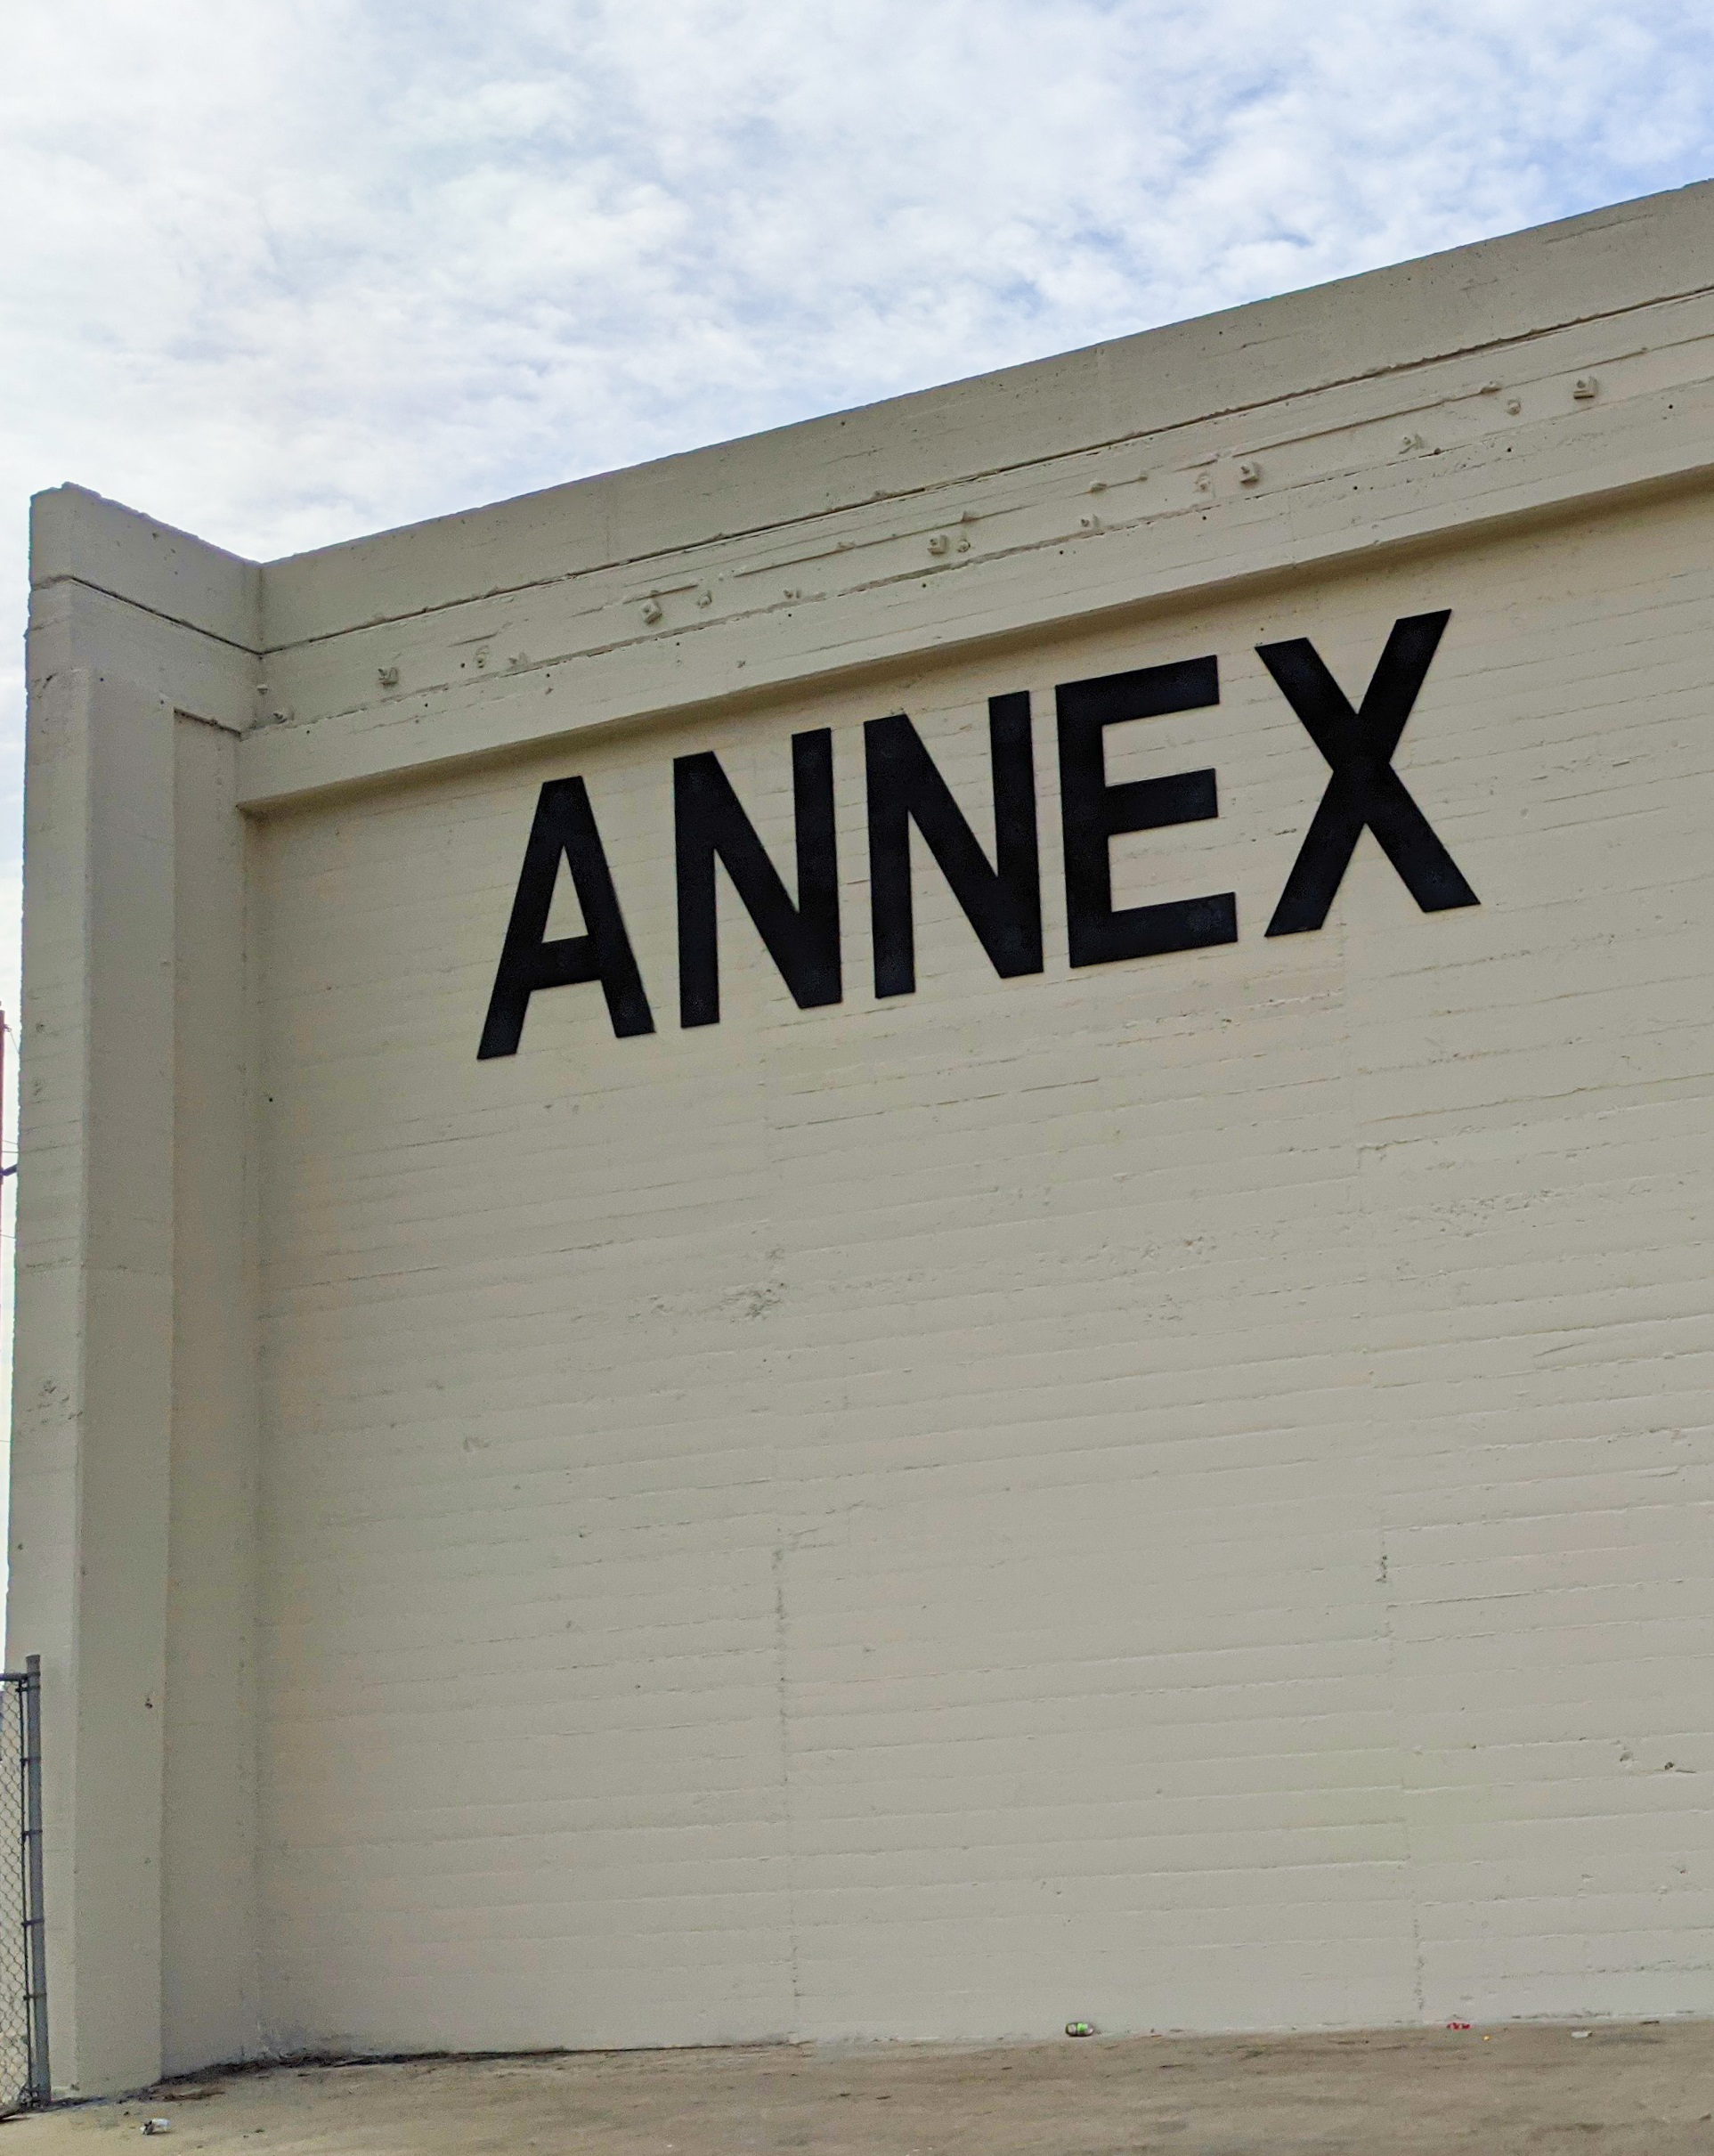 Annex raised lettering